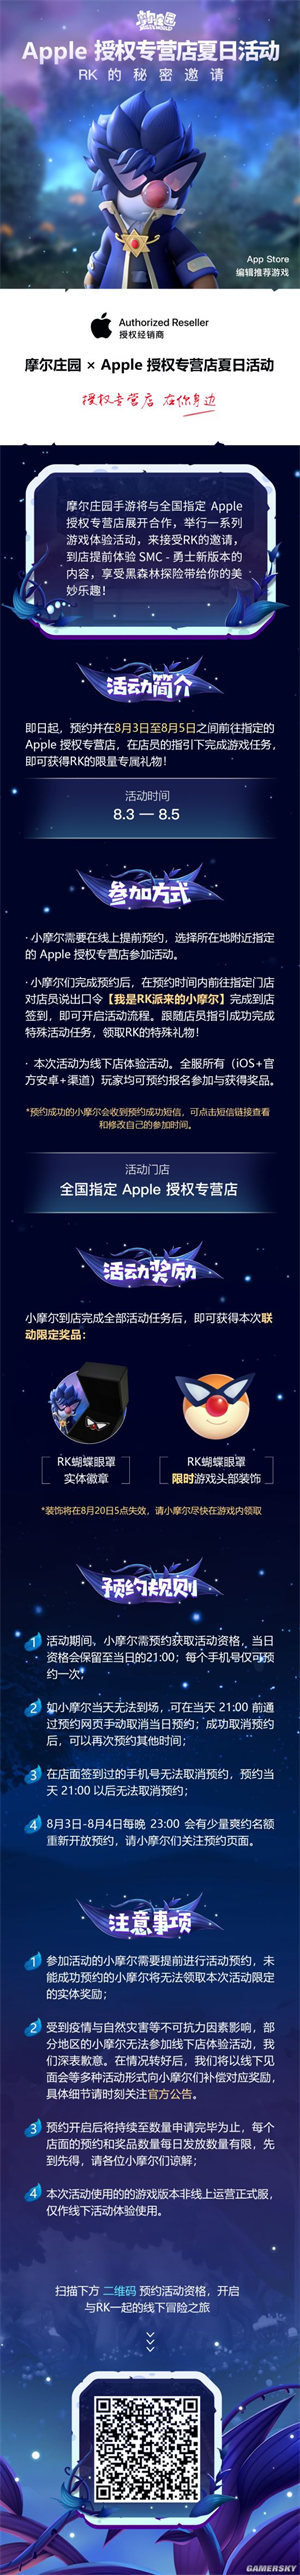 《摩尔庄园手游》 X Apple授权专营店夏日限定联动活动正式开始